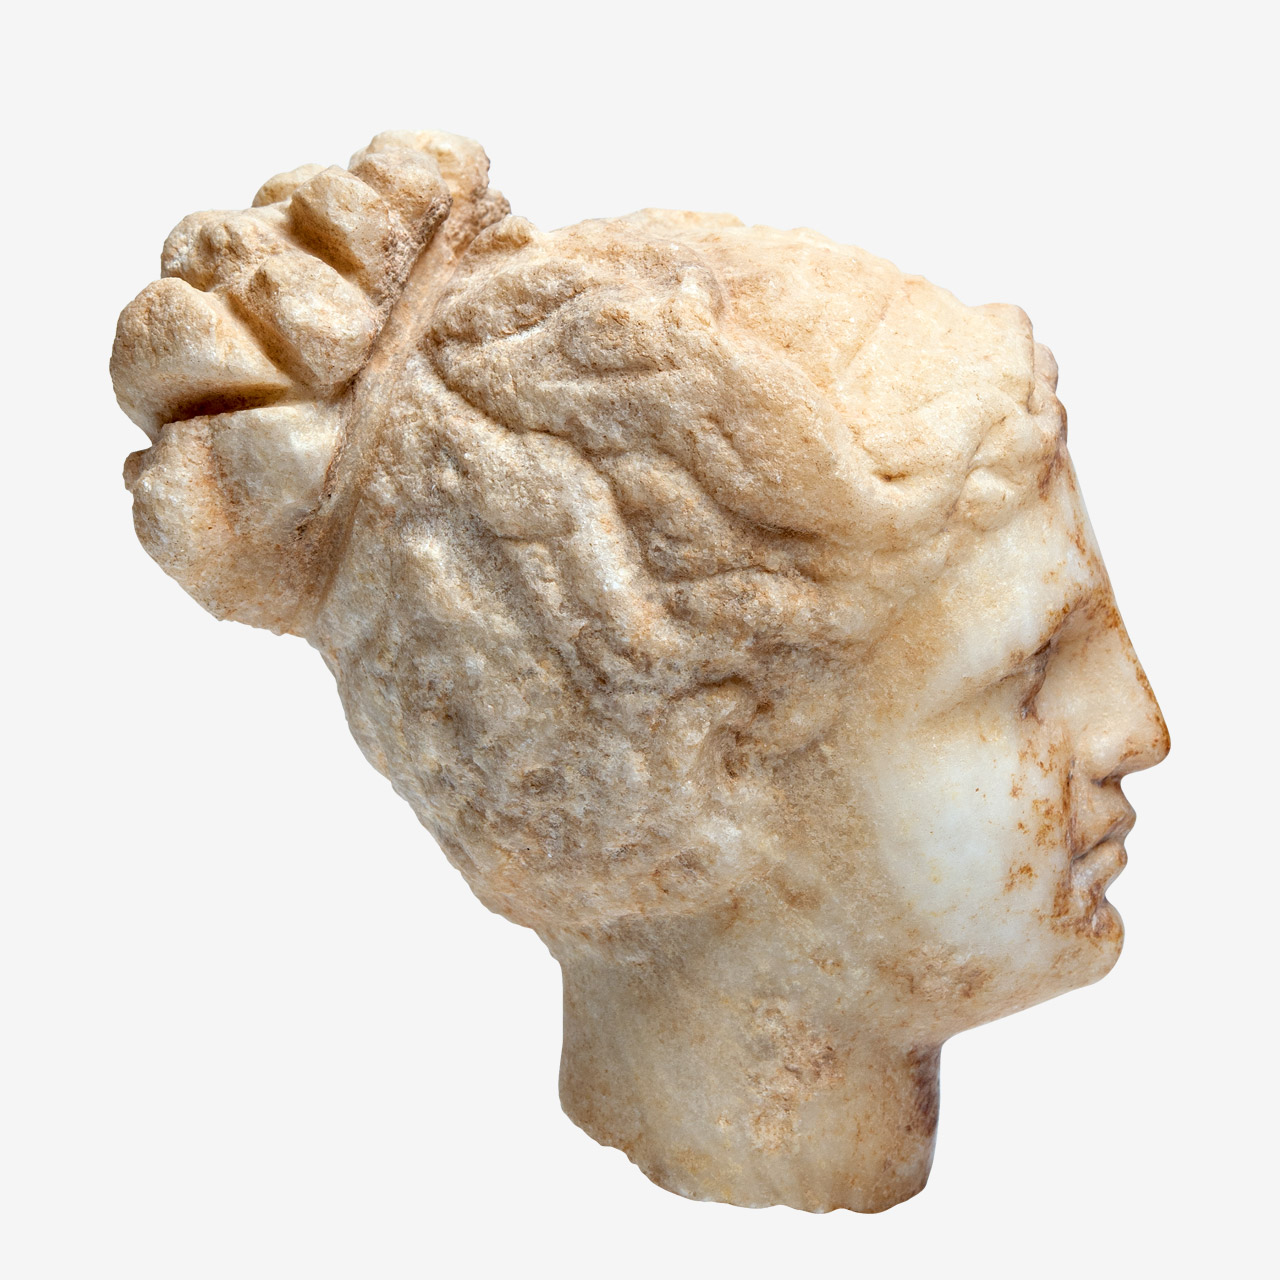 Κεφαλή μαρμάρινου αγαλματίου γυναικείας μορφής με τα κυματιστά μαλλιά της να δένονται σε λαμπάδιον.